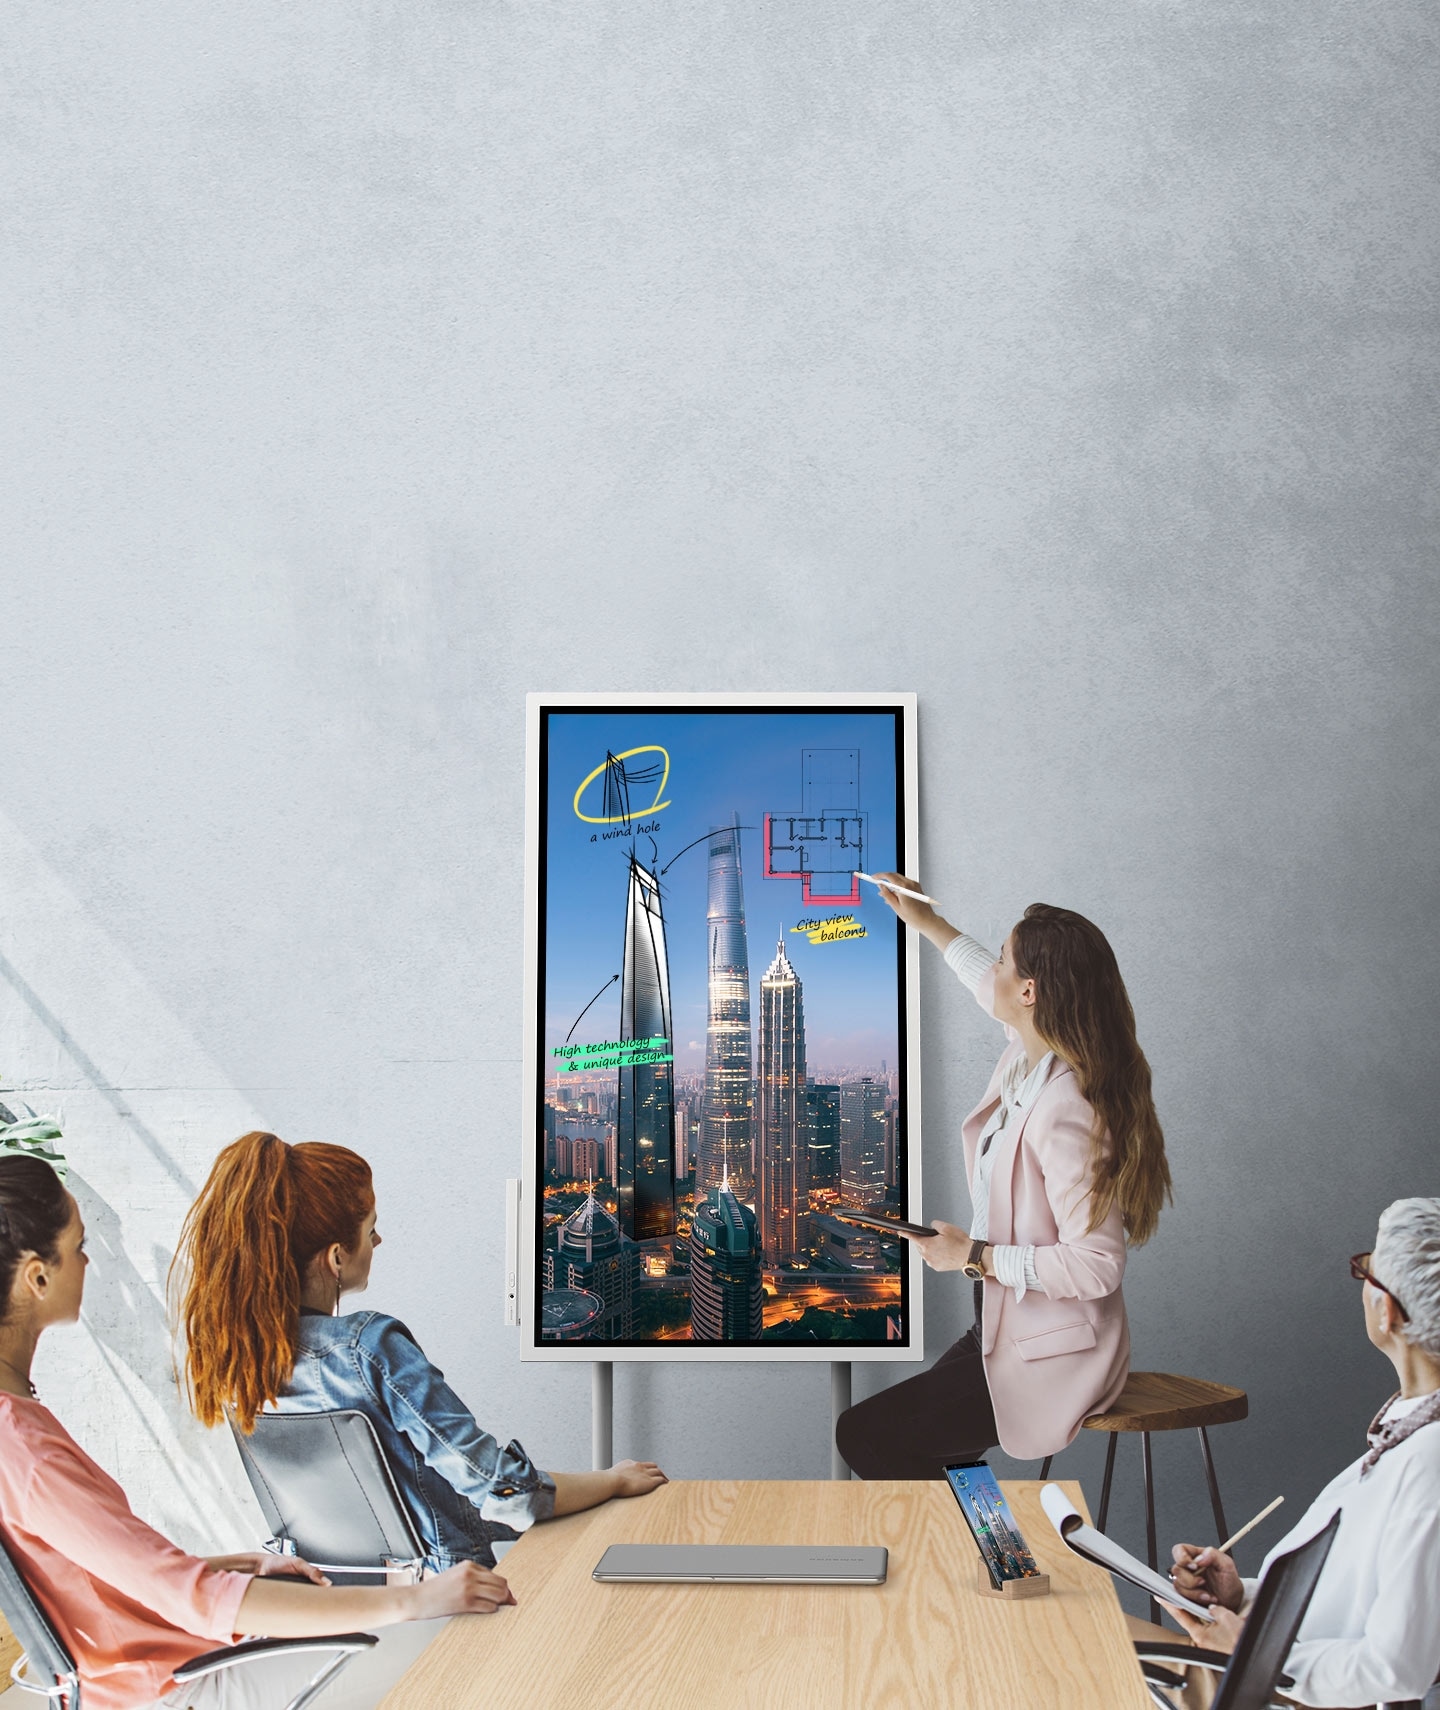 Una imagen que muestra cuatro personas en una reunión donde el dispositivo de Samsung Flip y un smartphone están conectados, mostrando las mismas imágenes. Están mirando la pantalla del Samsung Flip en modo vertical y dos de ellos están tomando notas.